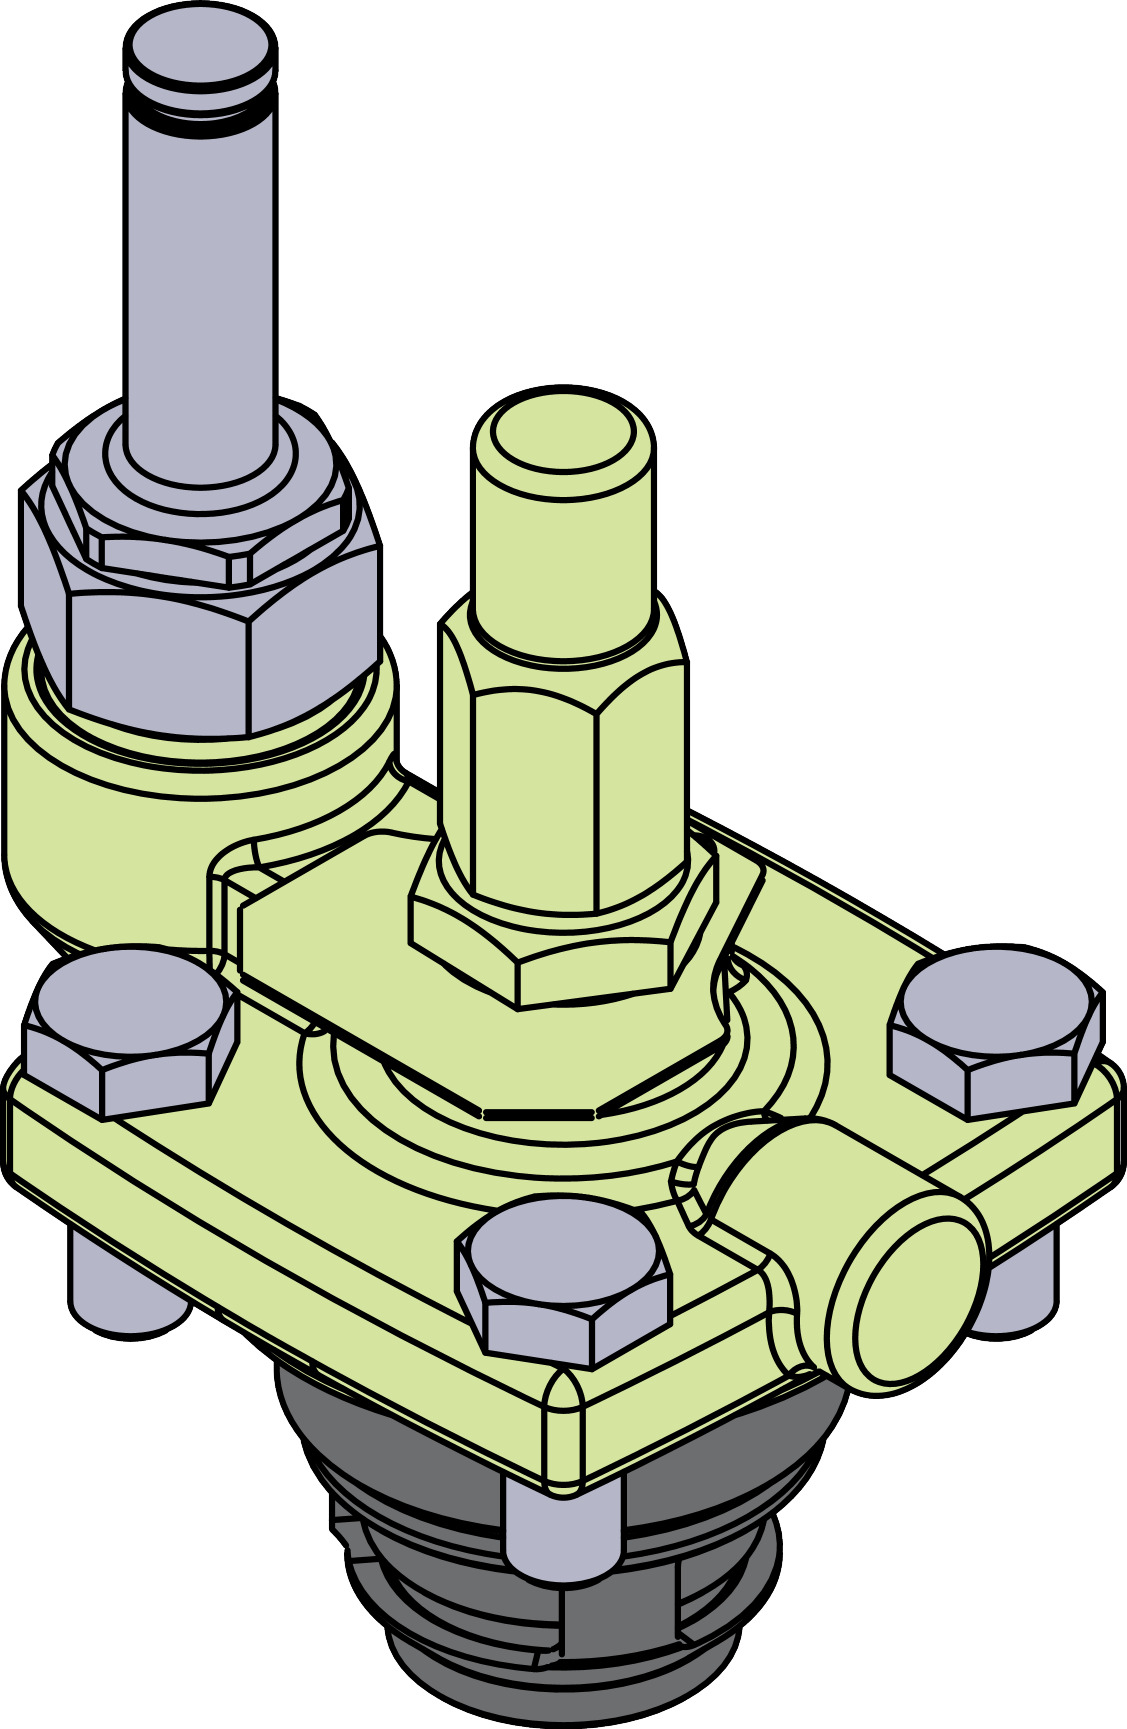 ICFE 25 - 40, Solenoid valve module